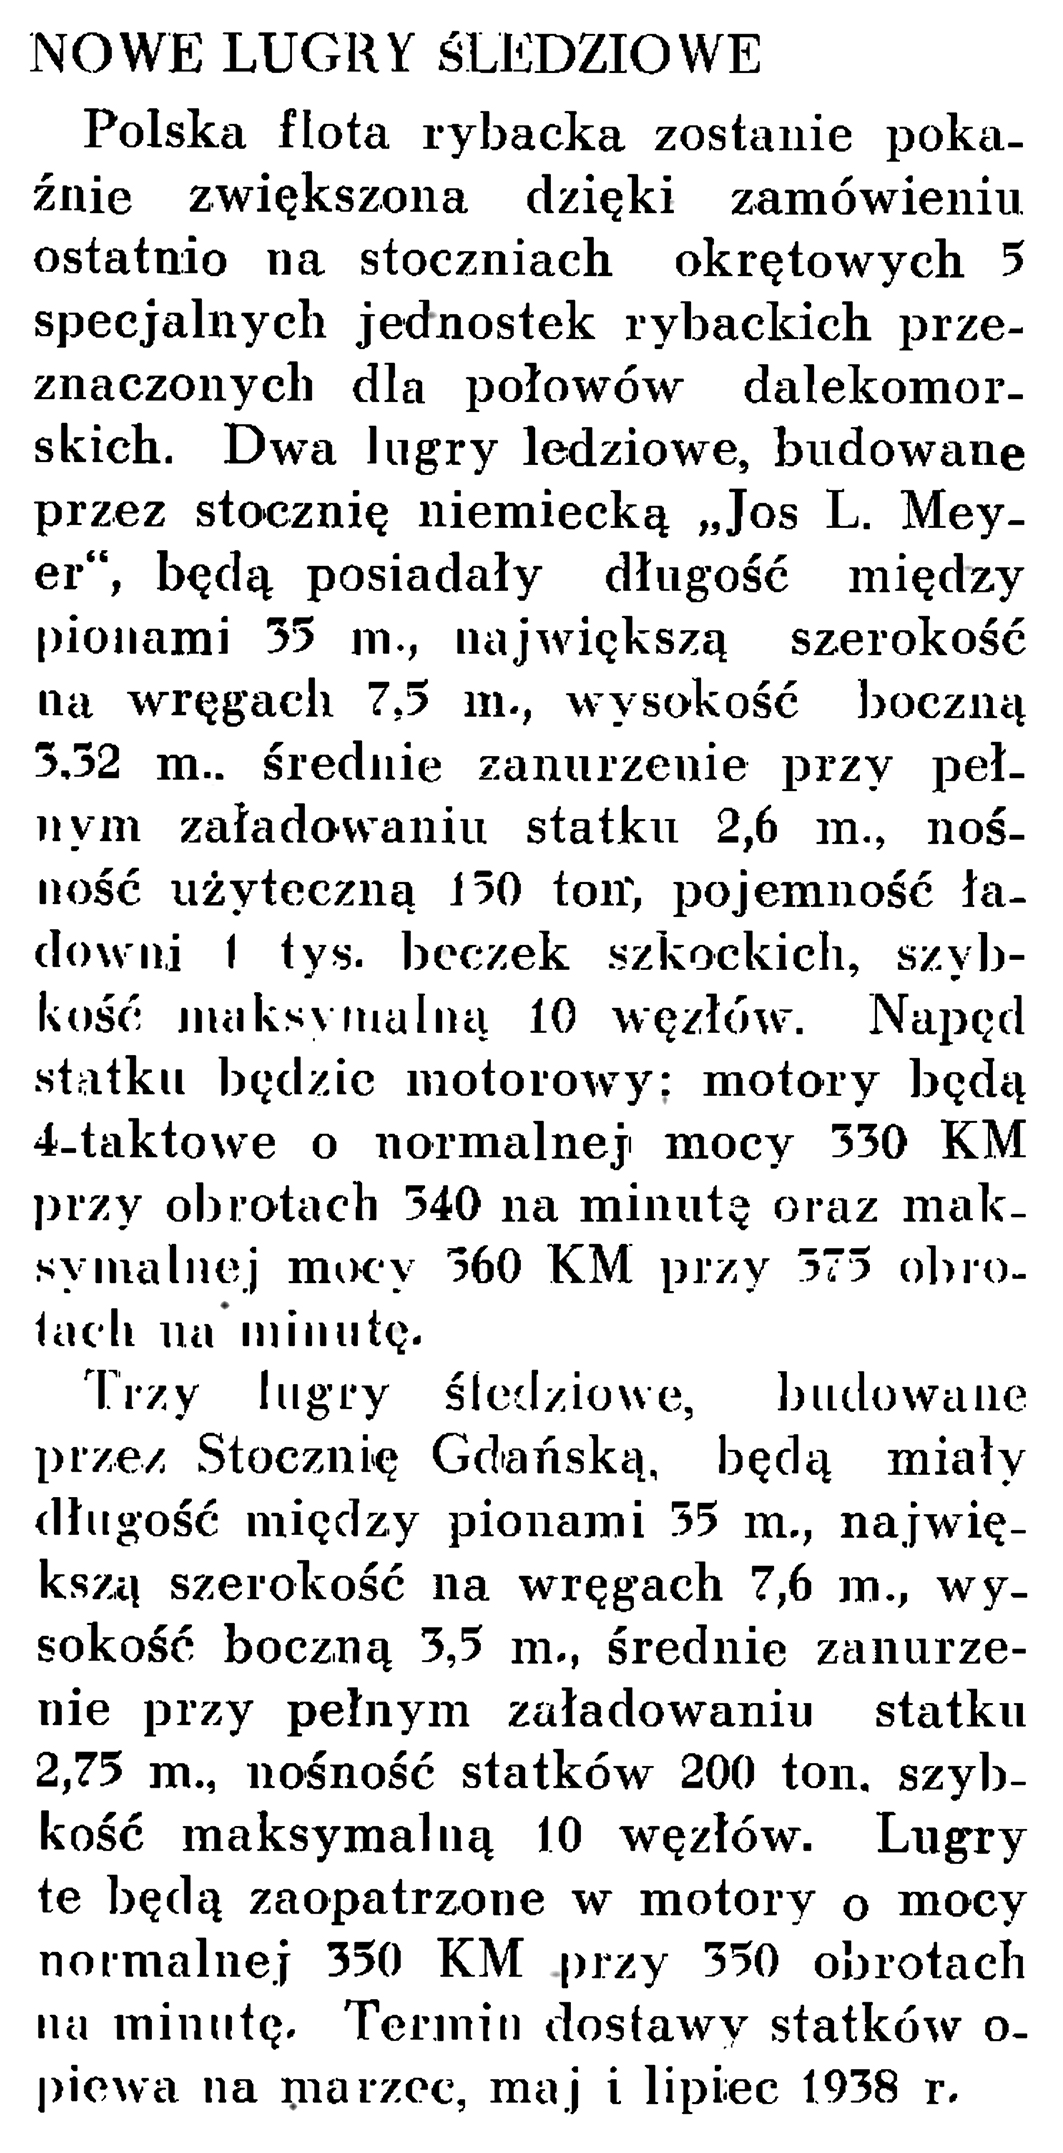 Nowe lugry śledziowe // Wiadomości Portu Gdyńskiego. - 1937, nr 12, s. 18